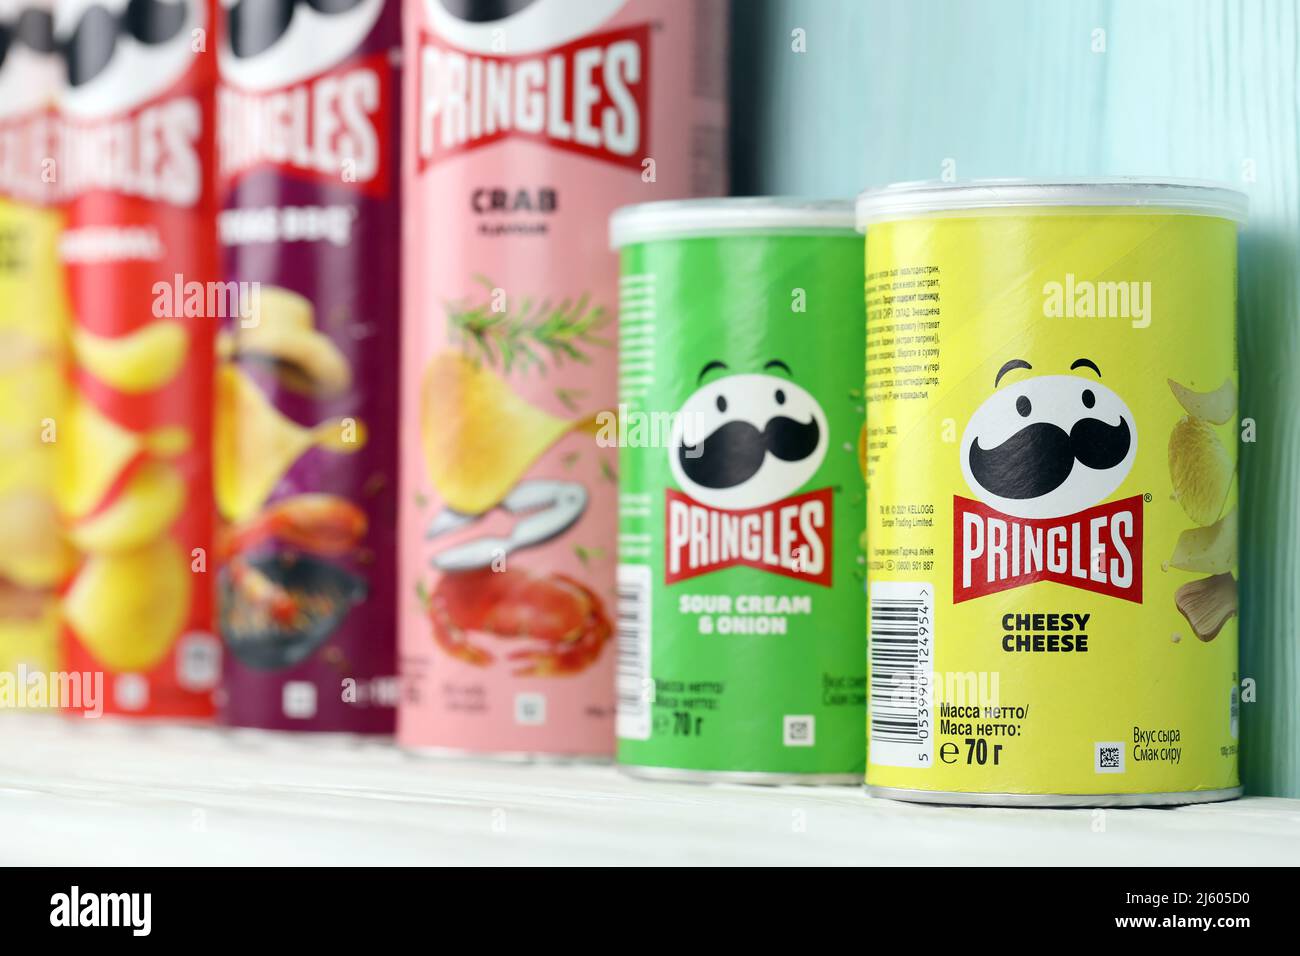 KHARKIV, UCRAINA - 16 DICEMBRE 2021: Produzione di Pringles con nuovo logo. Pringles è un marchio di patata snack chips di proprietà della Kellogg Company Foto Stock